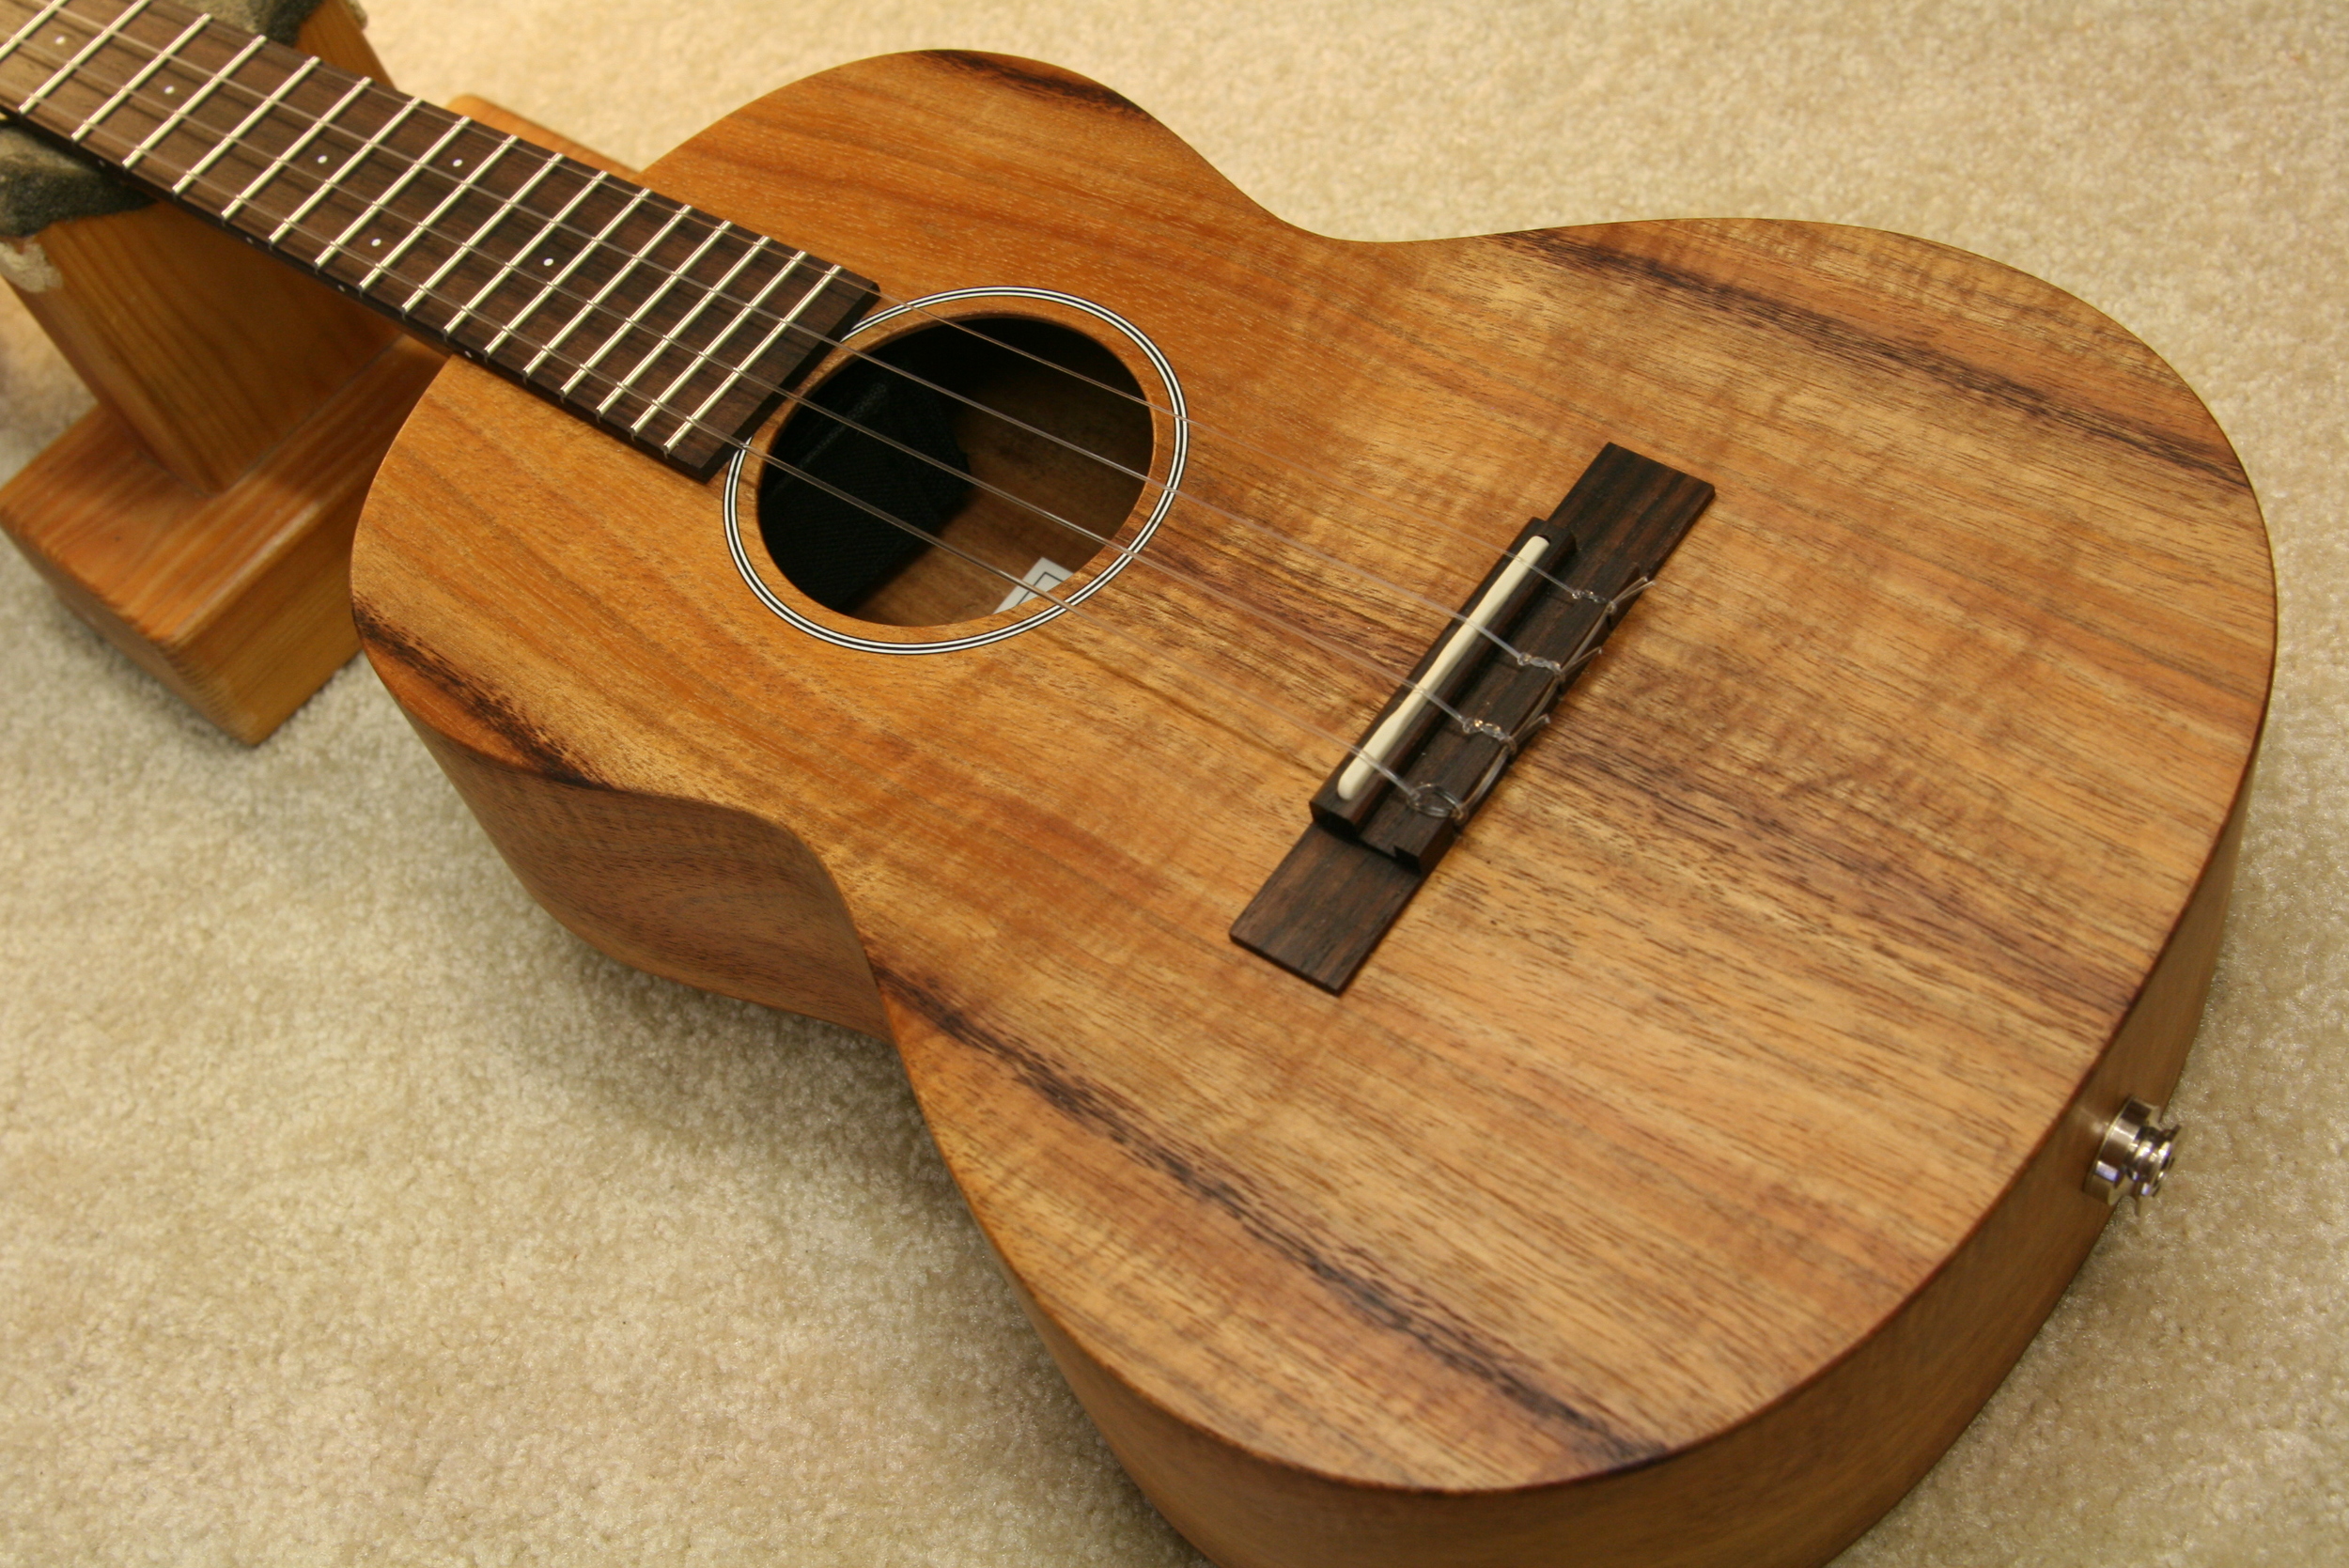 Acoustic pickup on ukulele